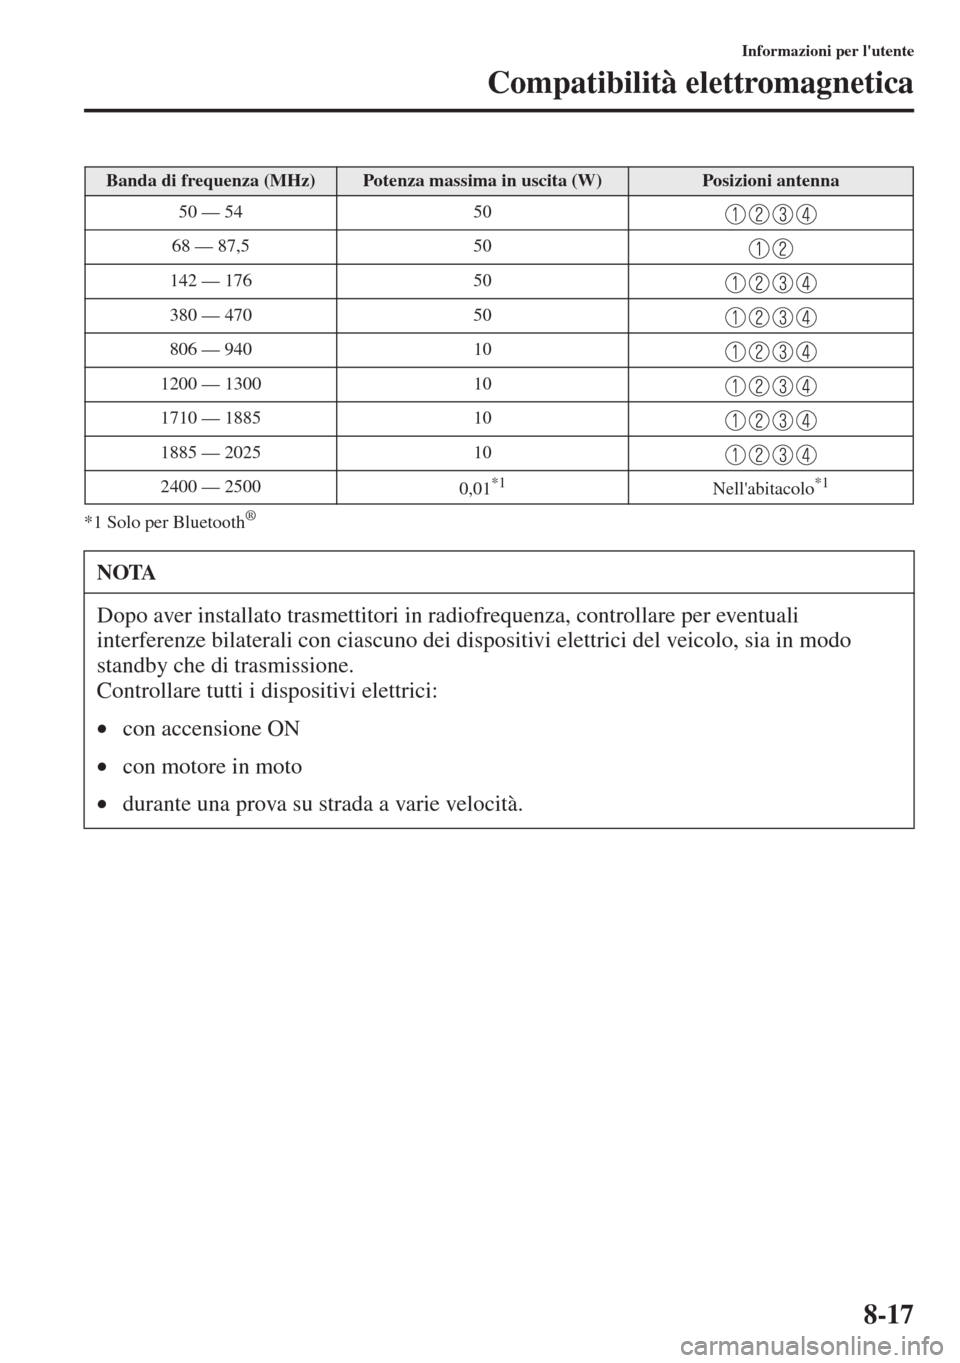 MAZDA MODEL CX-5 2013  Manuale del proprietario (in Italian) 8-17
Informazioni per lutente
Compatibilità elettromagnetica
*1 Solo per Bluetooth®
Banda di frequenza (MHz)Potenza massima in uscita (W)Posizioni antenna
50 — 54 50
68 — 87,5 50
142 — 176 50